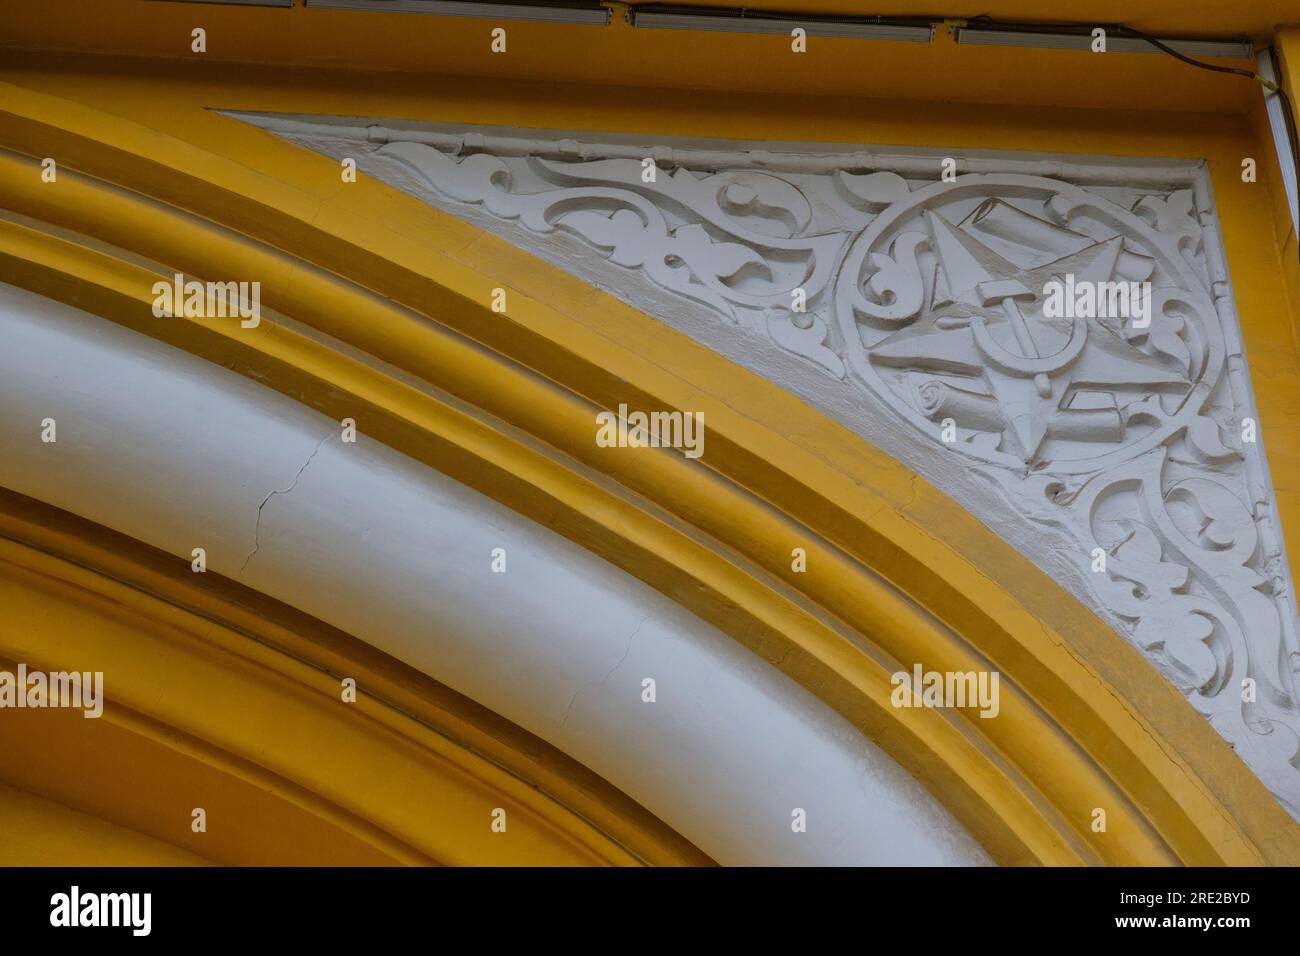 Kasachstan, Almaty. Hammer und Sichel Emblem im sowjetischen Wissenschaftshaus. Stockfoto